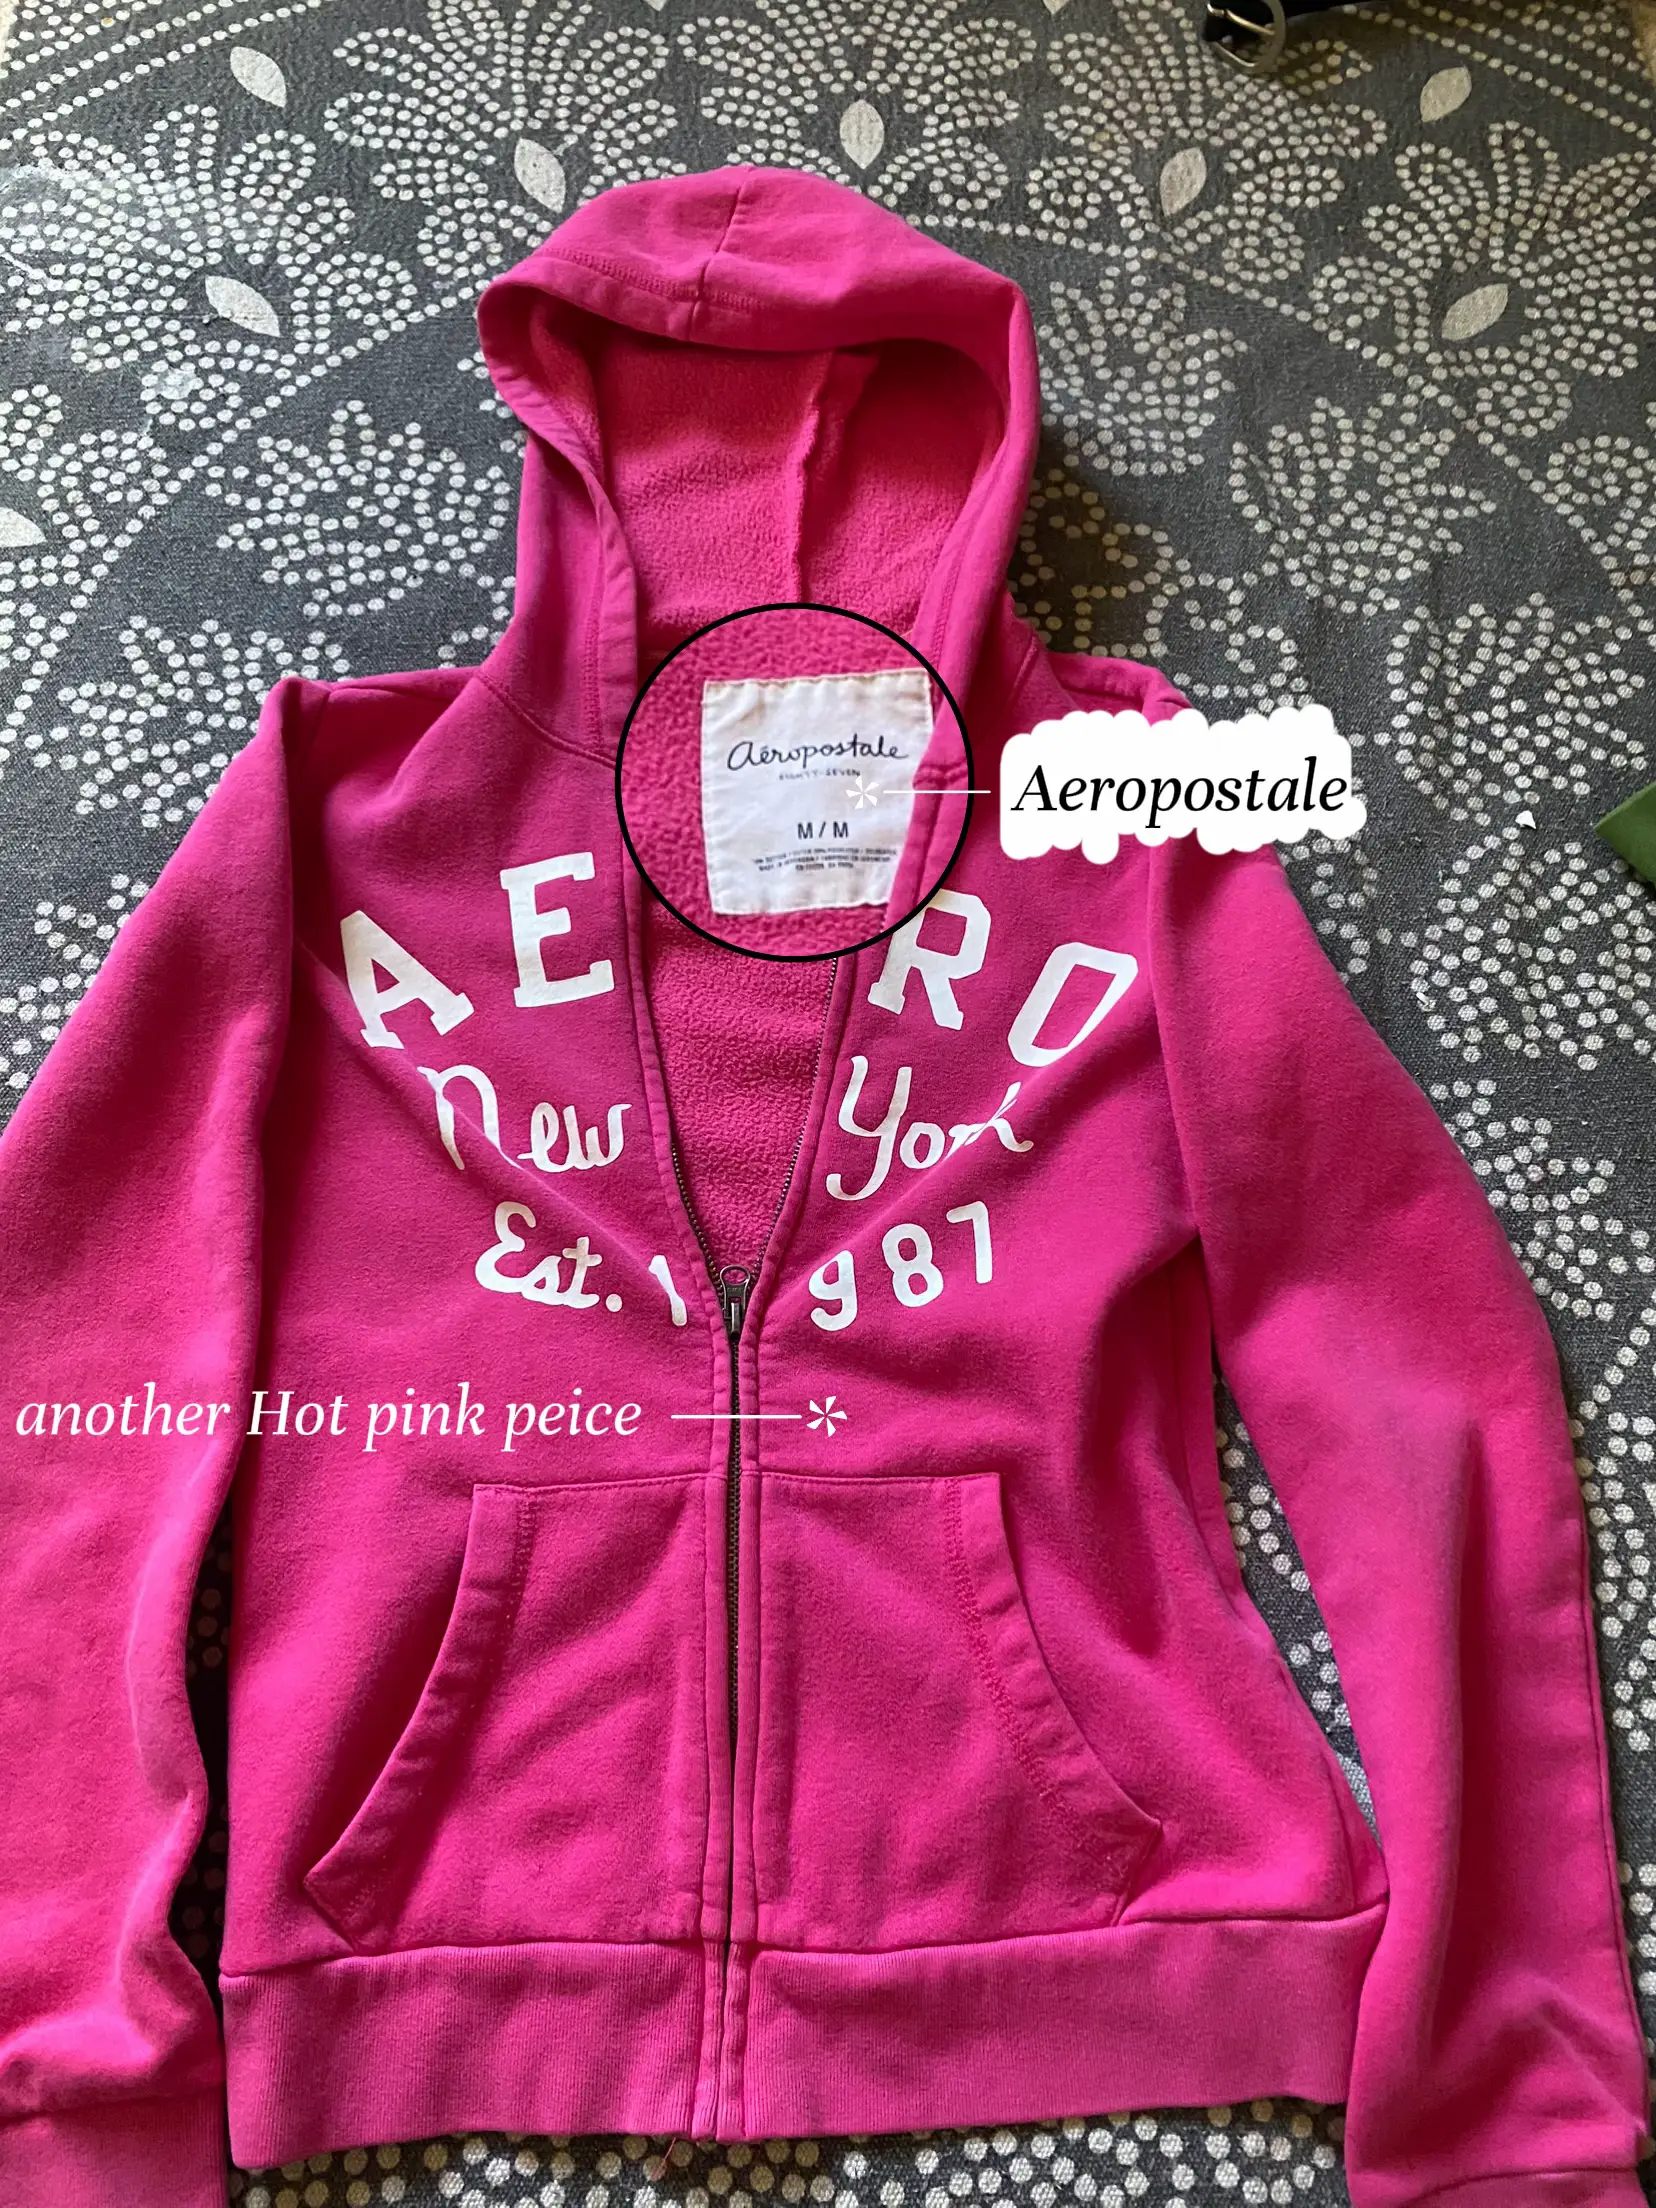 Pastel Y2K paisley lucky brand zip up hoodie! This - Depop